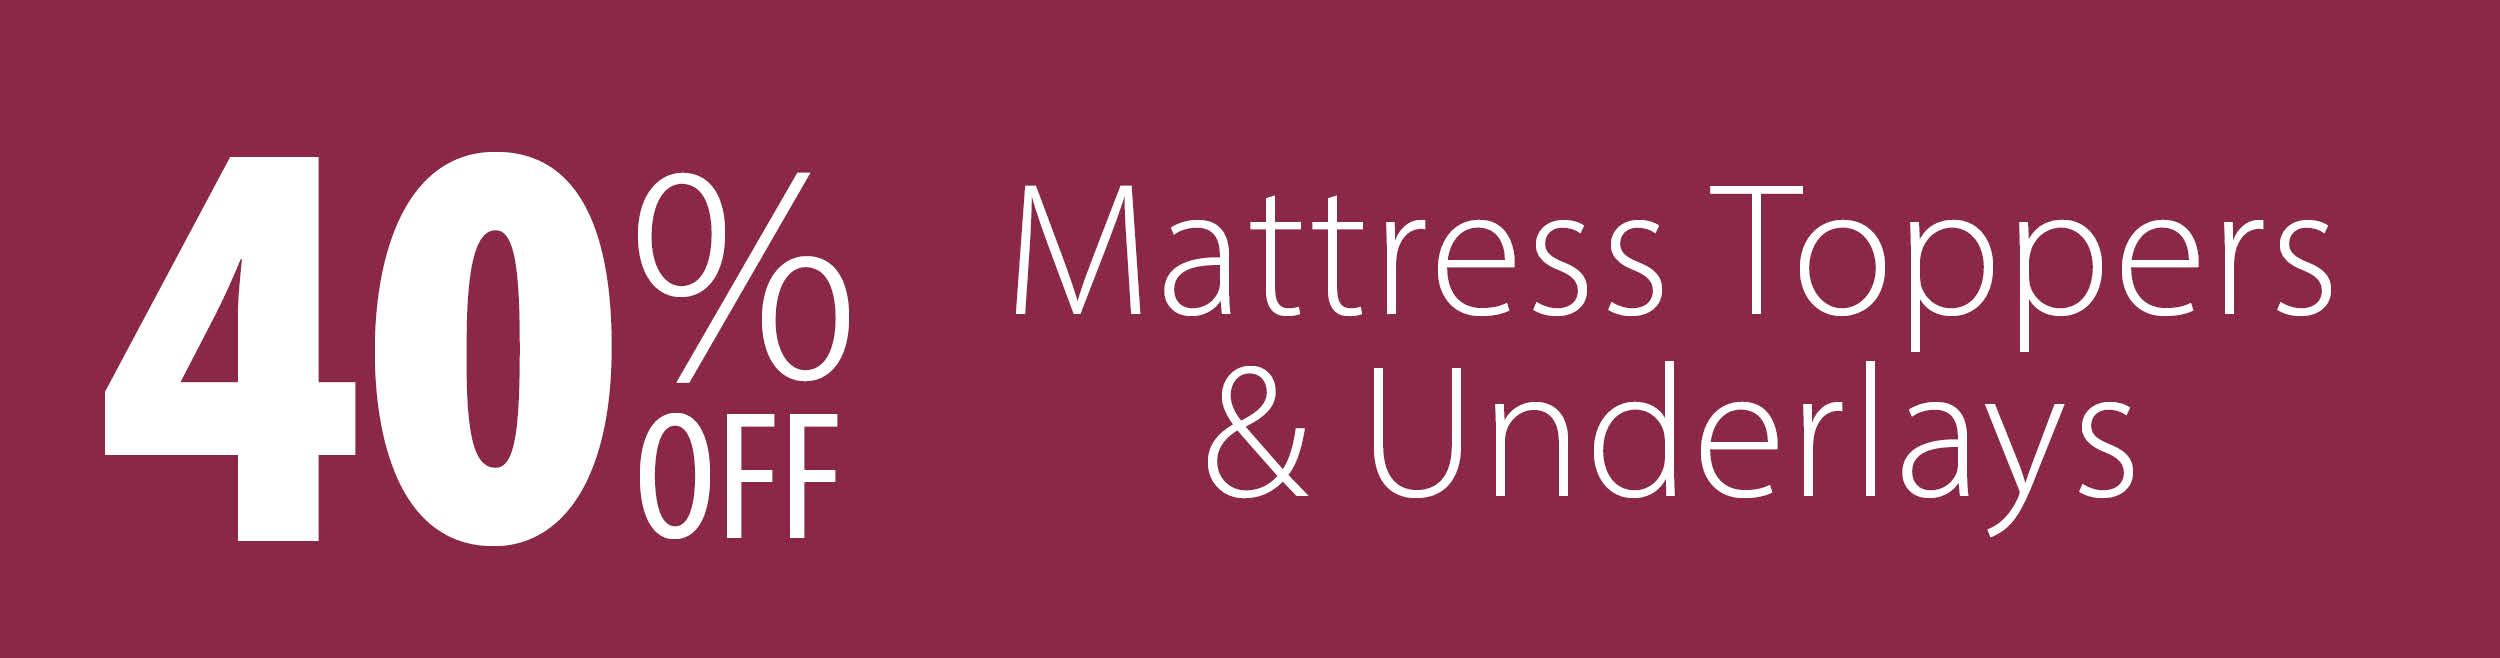 mattress toppers